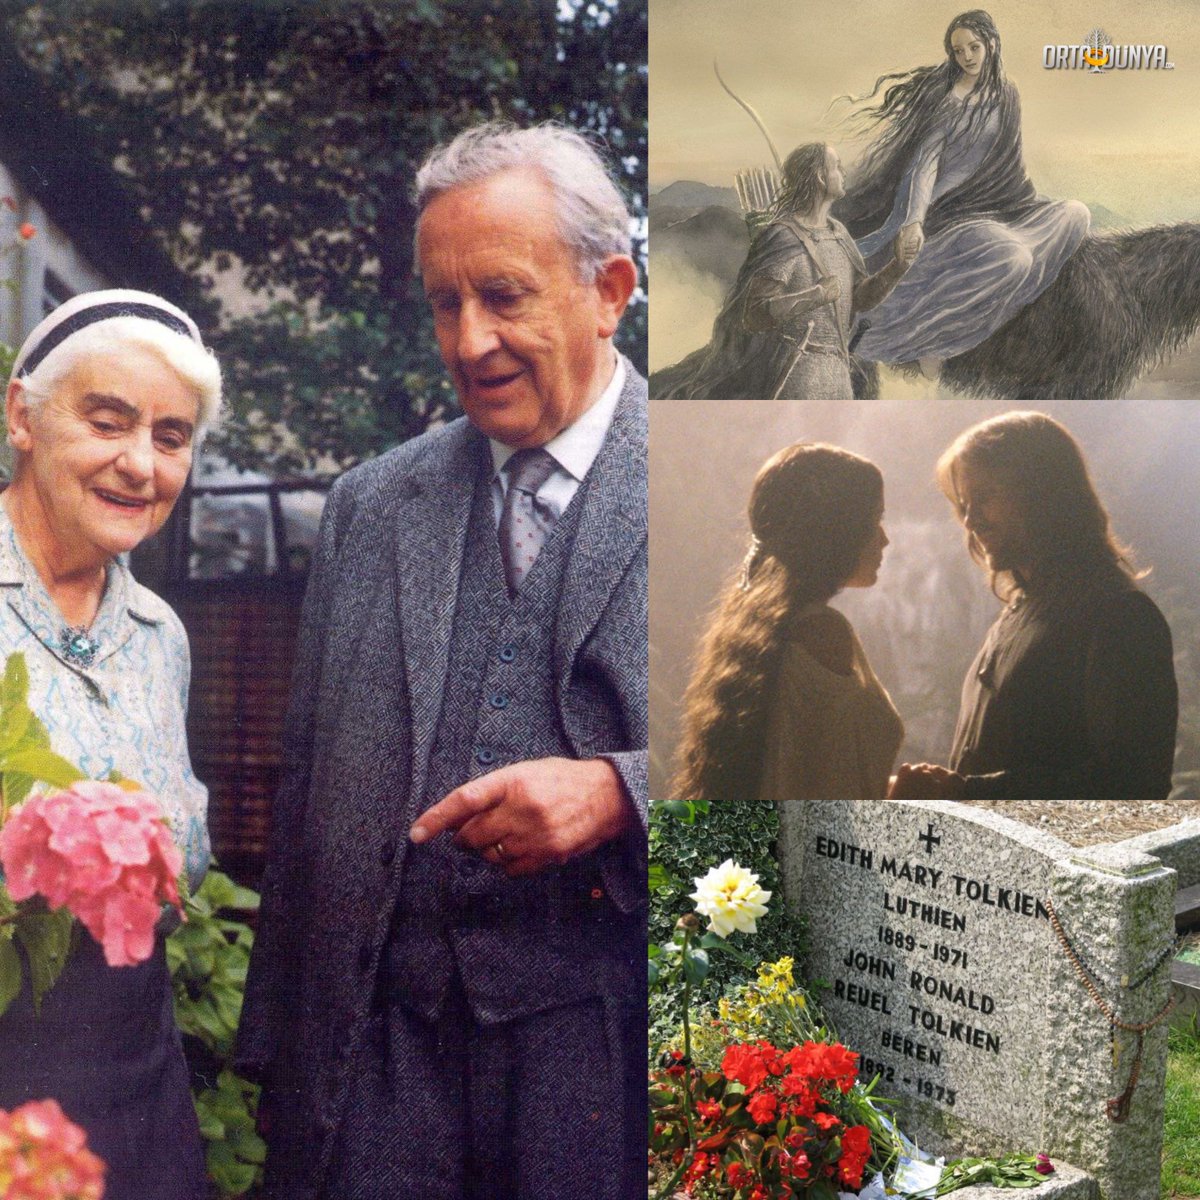 Bugün Beren ile Lúthien'in, Aragorn ile Arwen'in birbirlerine kavuştukları gün. J.R.R. Tolkien ile Edith Bratt, 108 yıl önce bugün evlendi ve ölüm bile onları birbirinden ayıramadı.